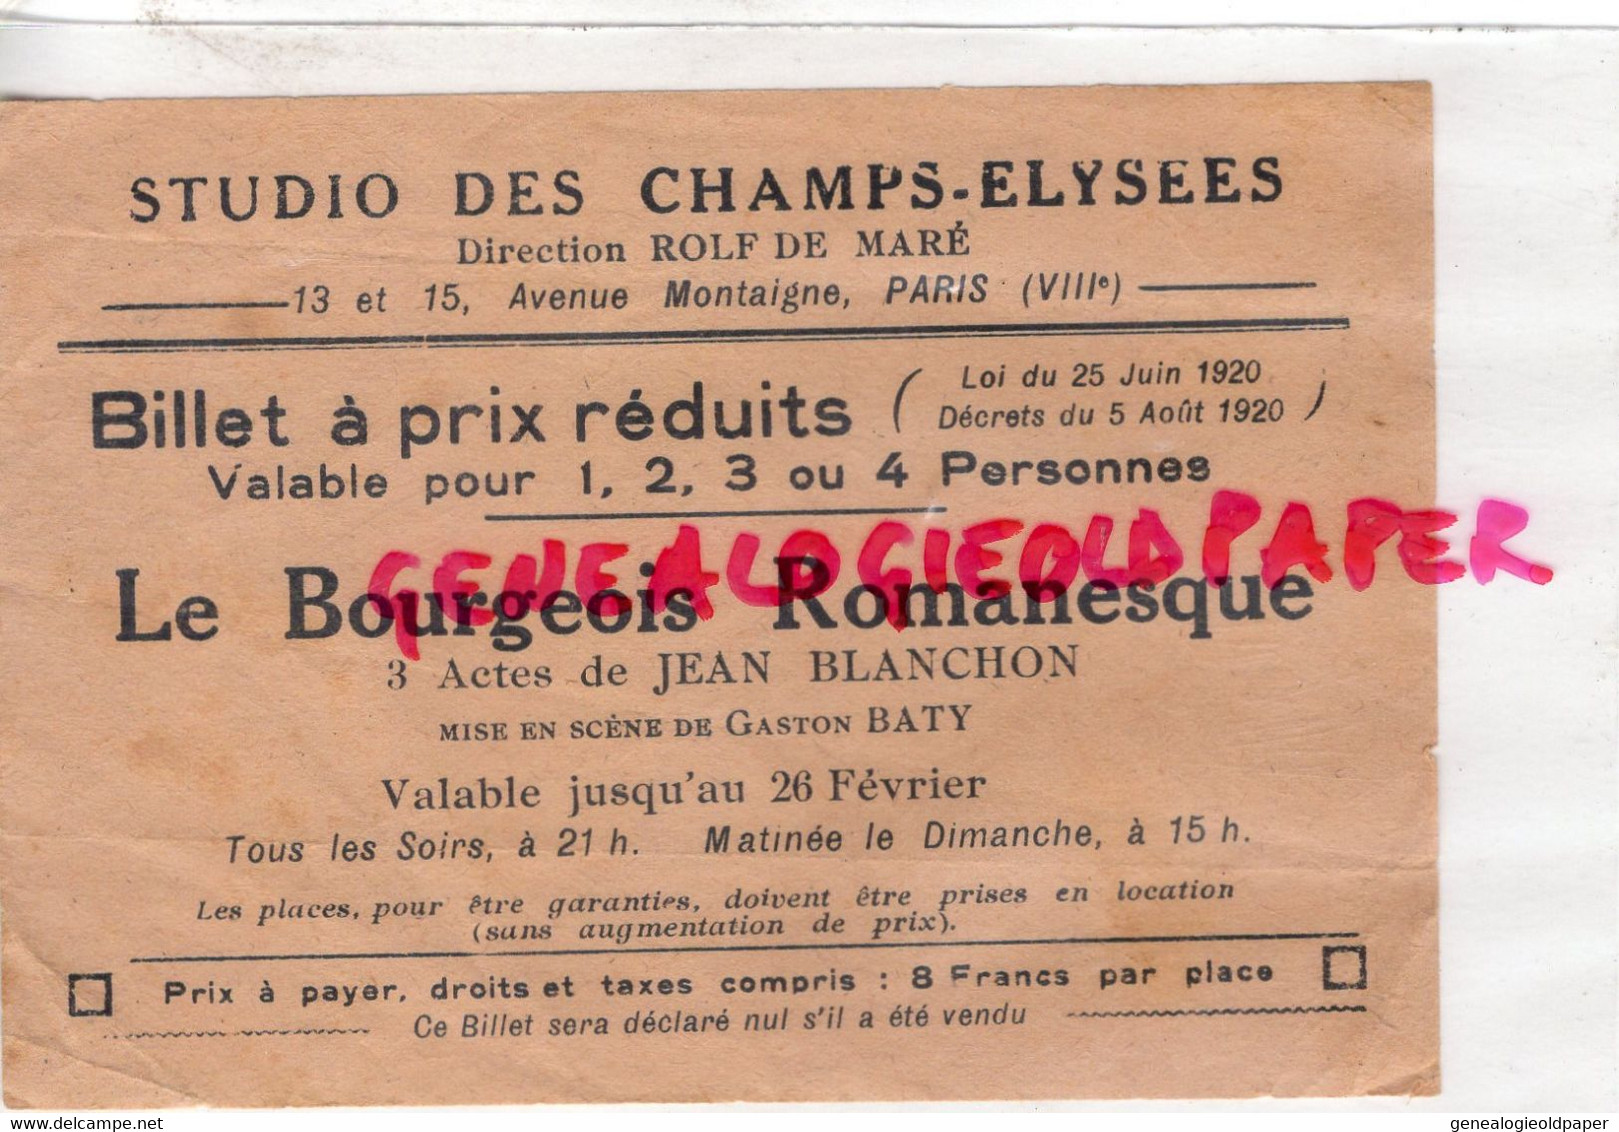 75- PARIS- STUDIO CHAMPS ELYSEES- BILLET LE BOURGEOIS ROMANESQUE-JEAN BLANCHON-GASTON BATY-1920-ROLF DE MARE-MONTAIGNE - Tickets D'entrée